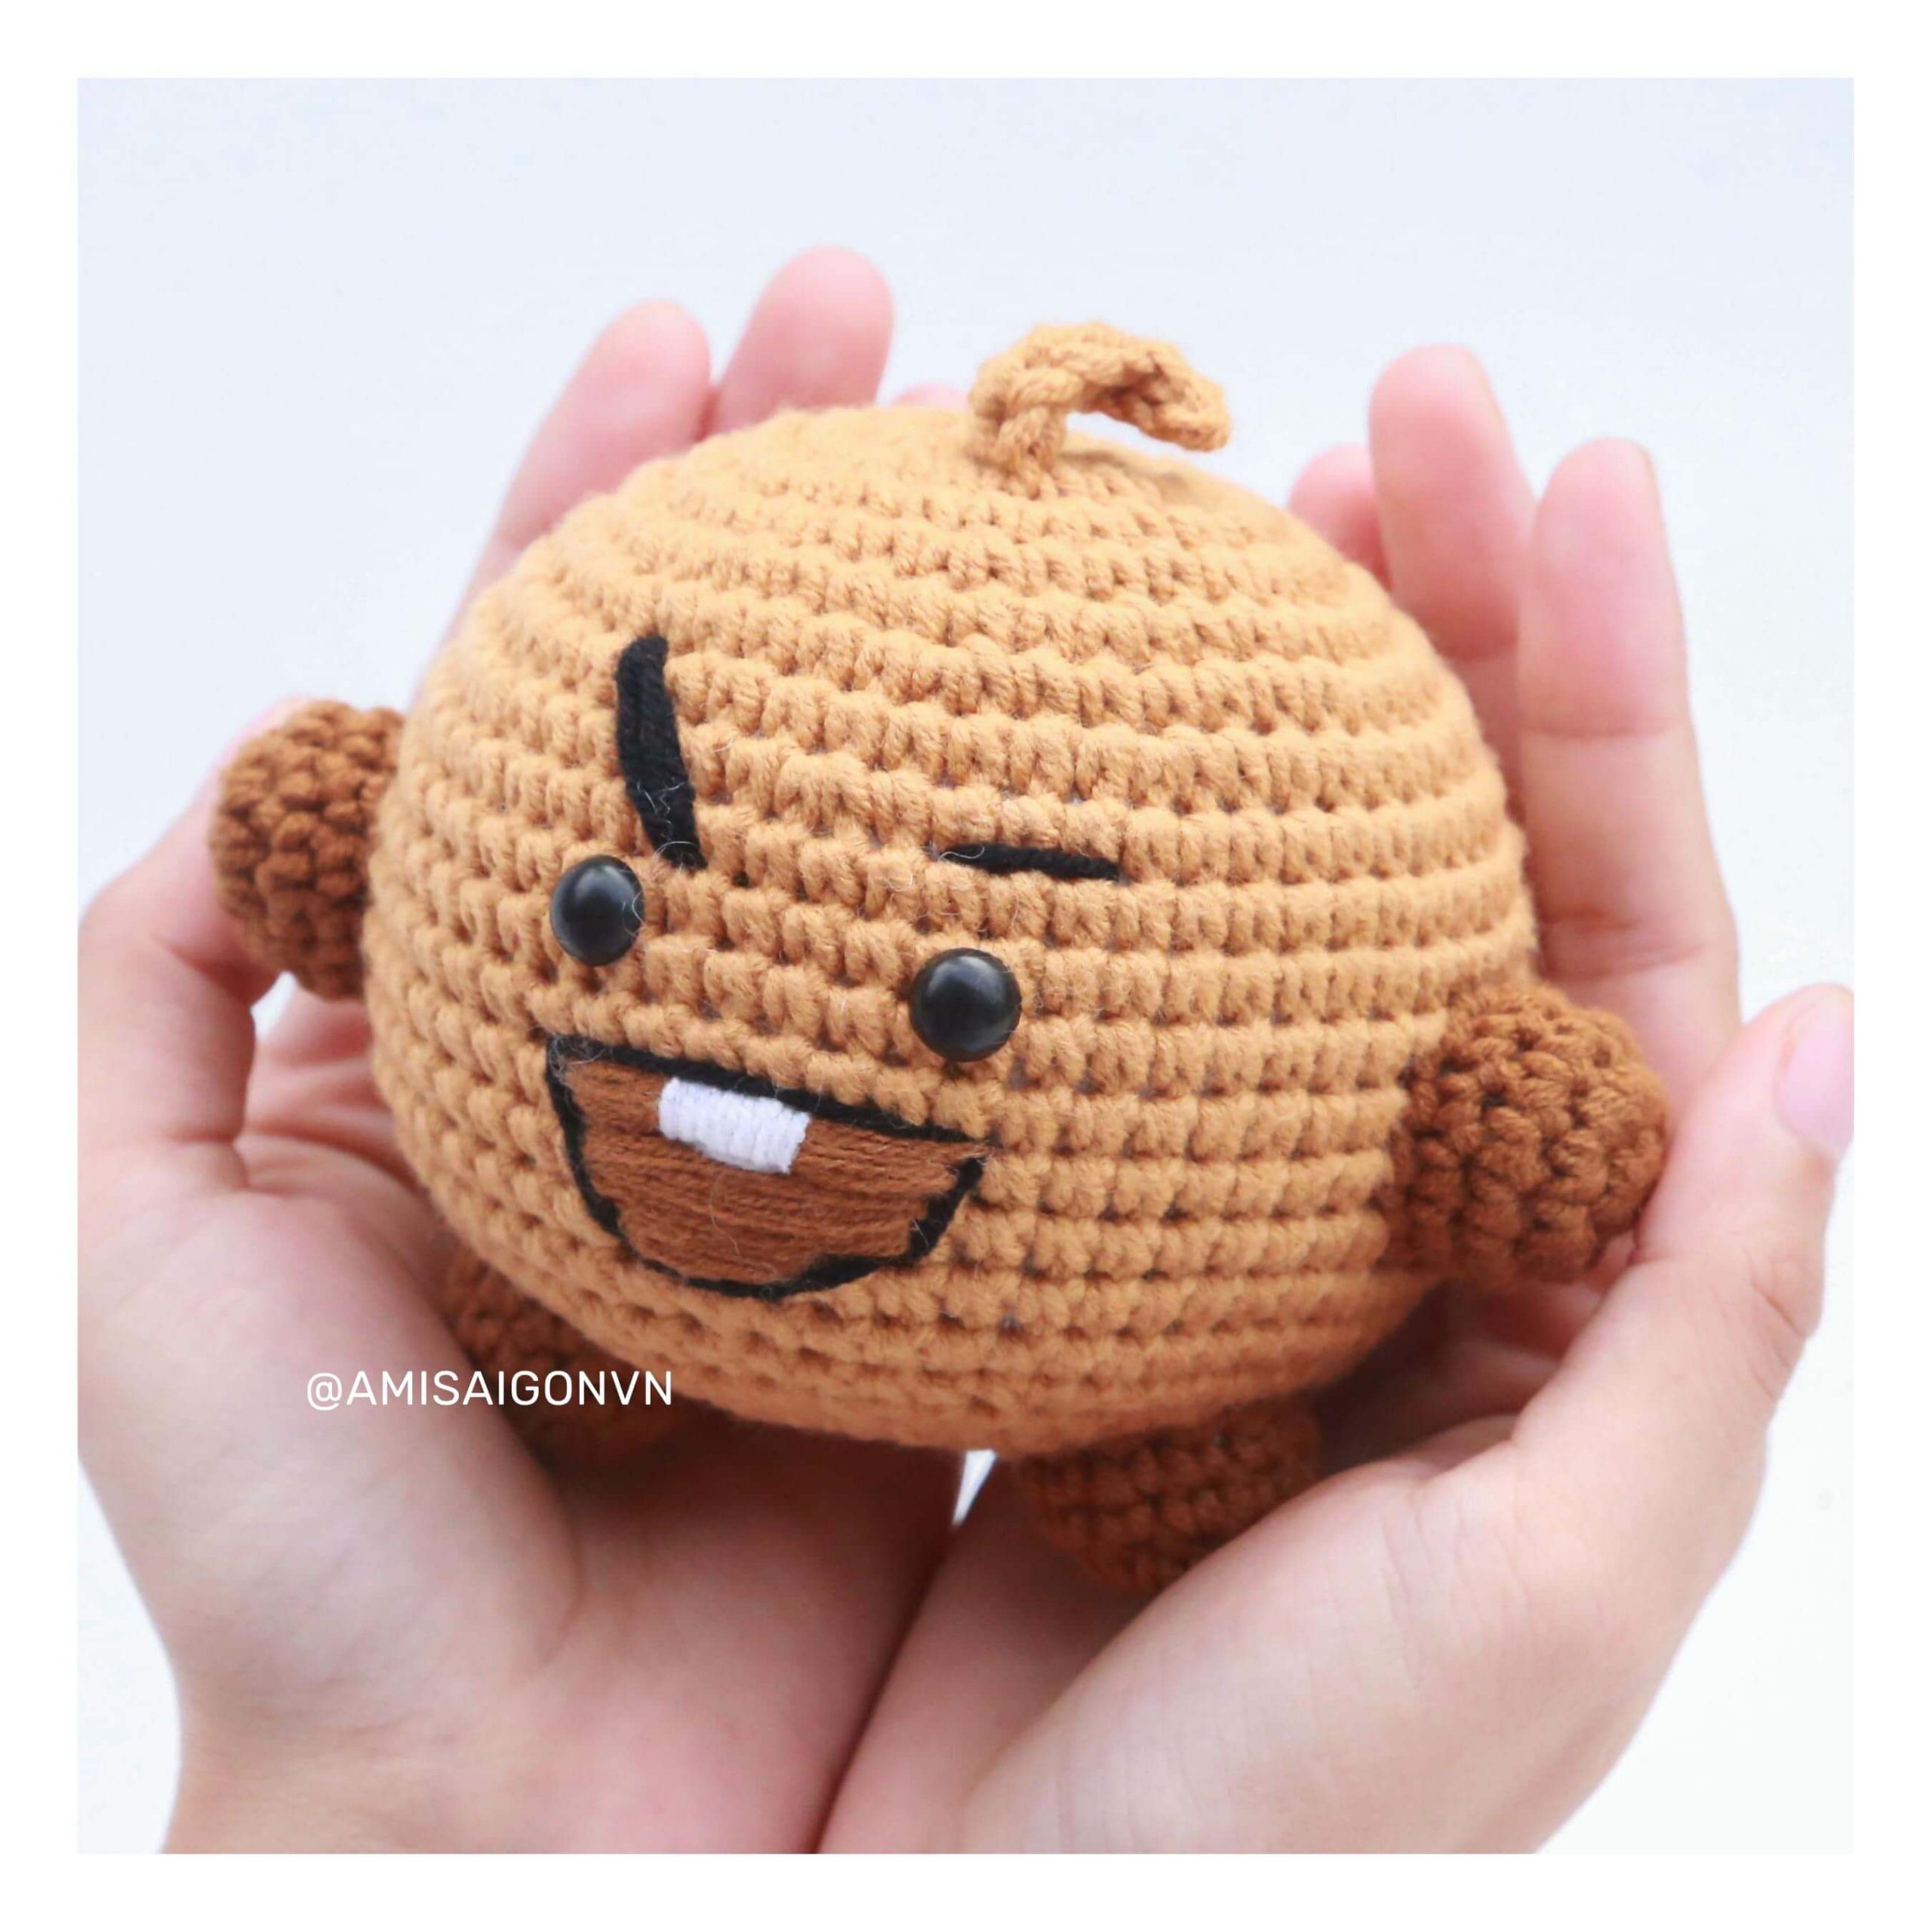 shooky-amigurumi-crochet-pattern-amisaigon-bt21-bts (11)